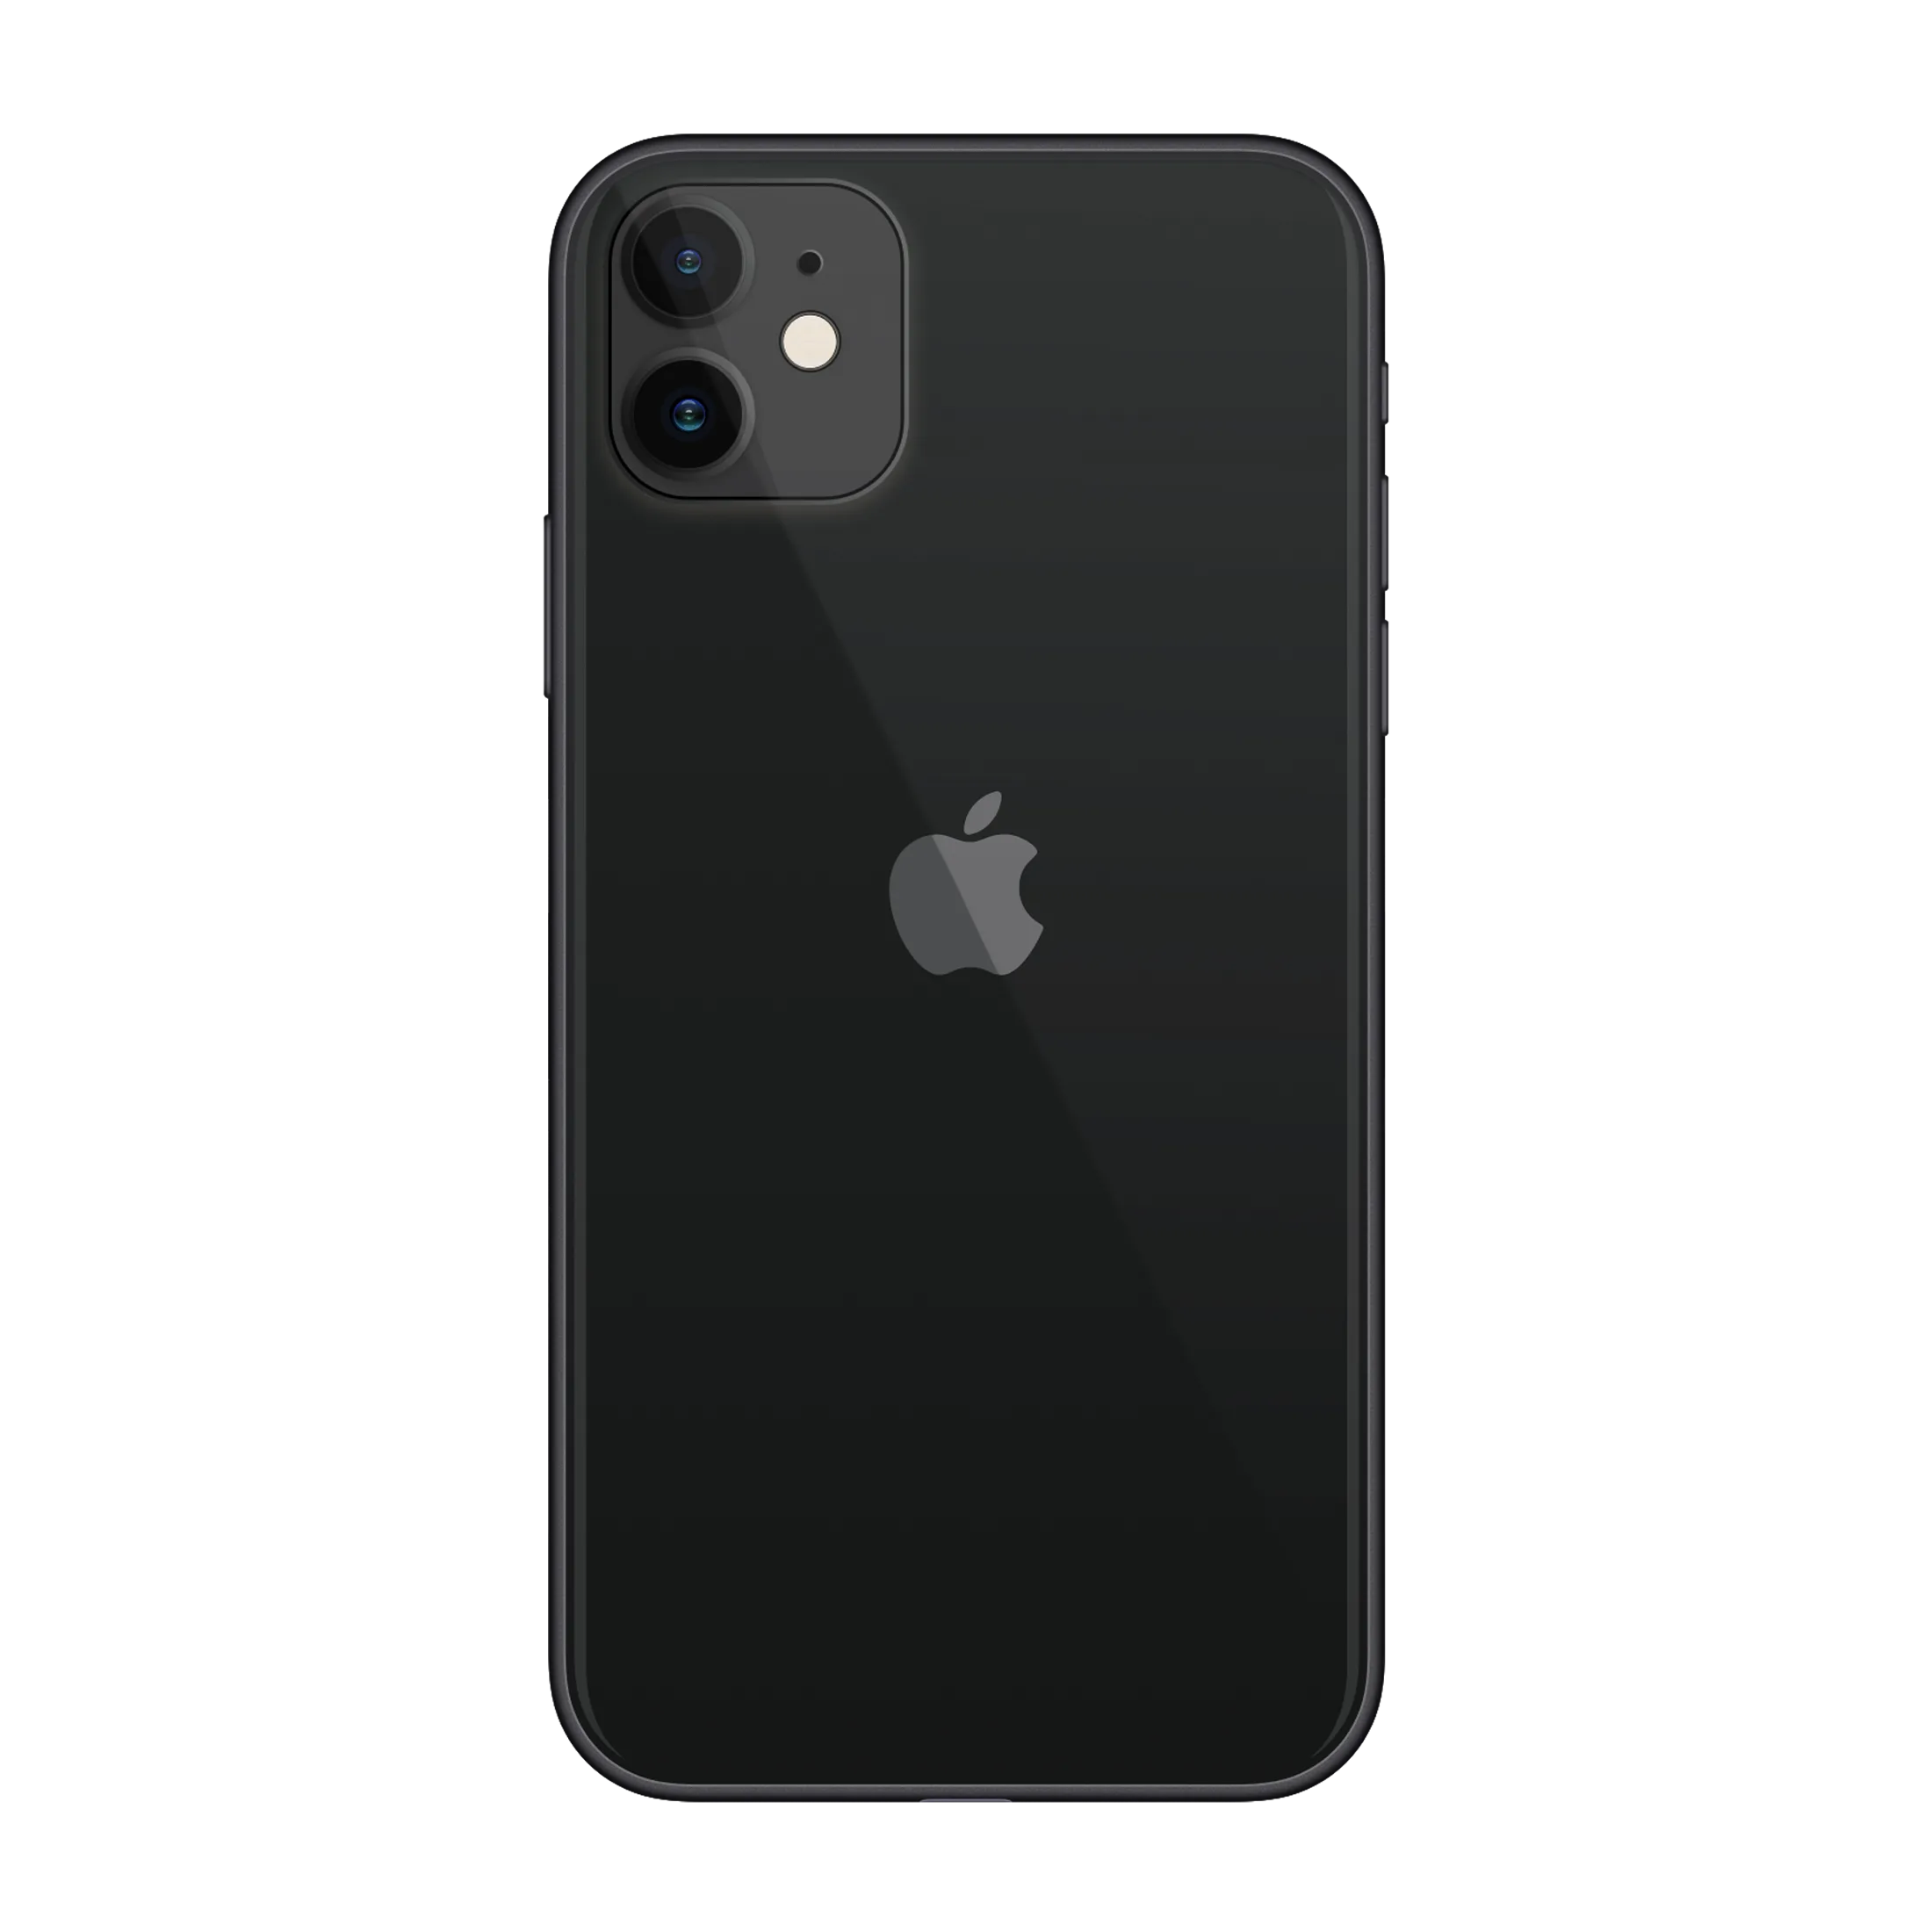 Айфон 11 про новосибирск. Apple iphone 11 64 ГБ черный. Apple iphone 11 64gb Black. Apple iphone 11 128gb Black. Iphone 11, 64 ГБ, чёрный.